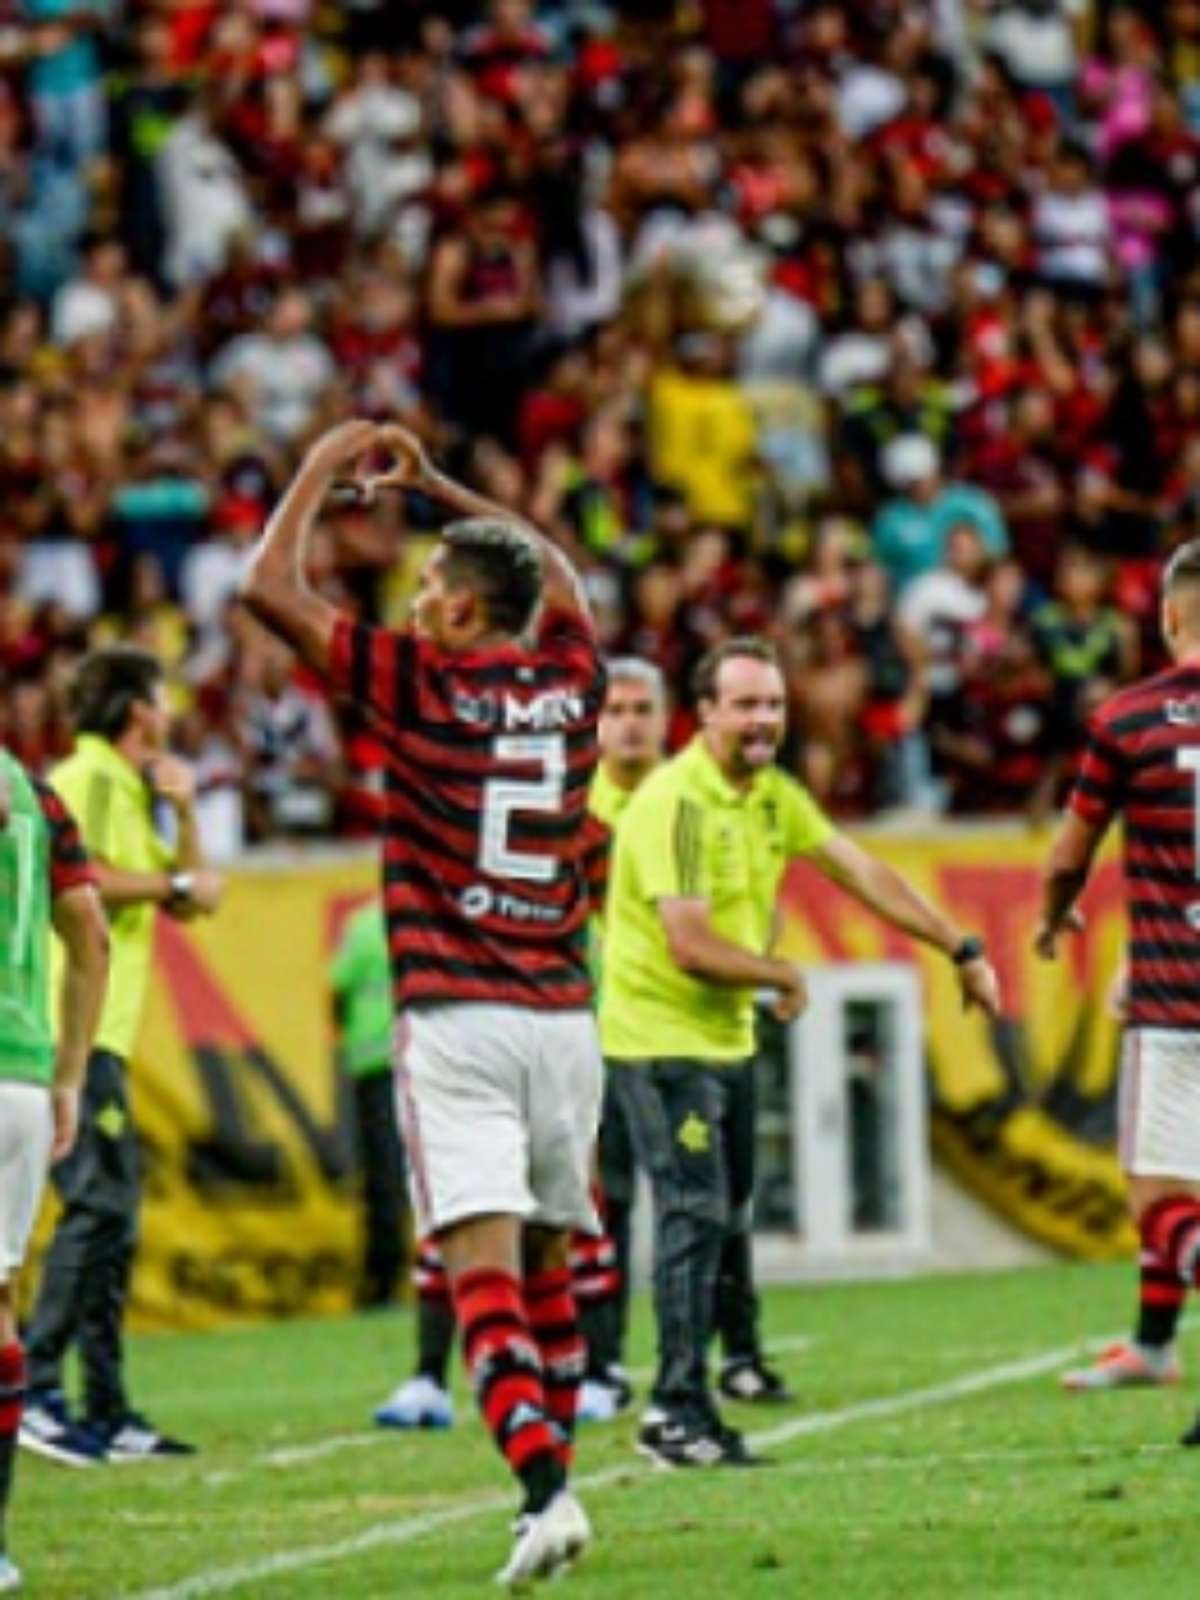 Orlando City passa a valer R$ 2,2 bilhões com dono brasileiro mesmo sem  resultados em campo, futebol internacional